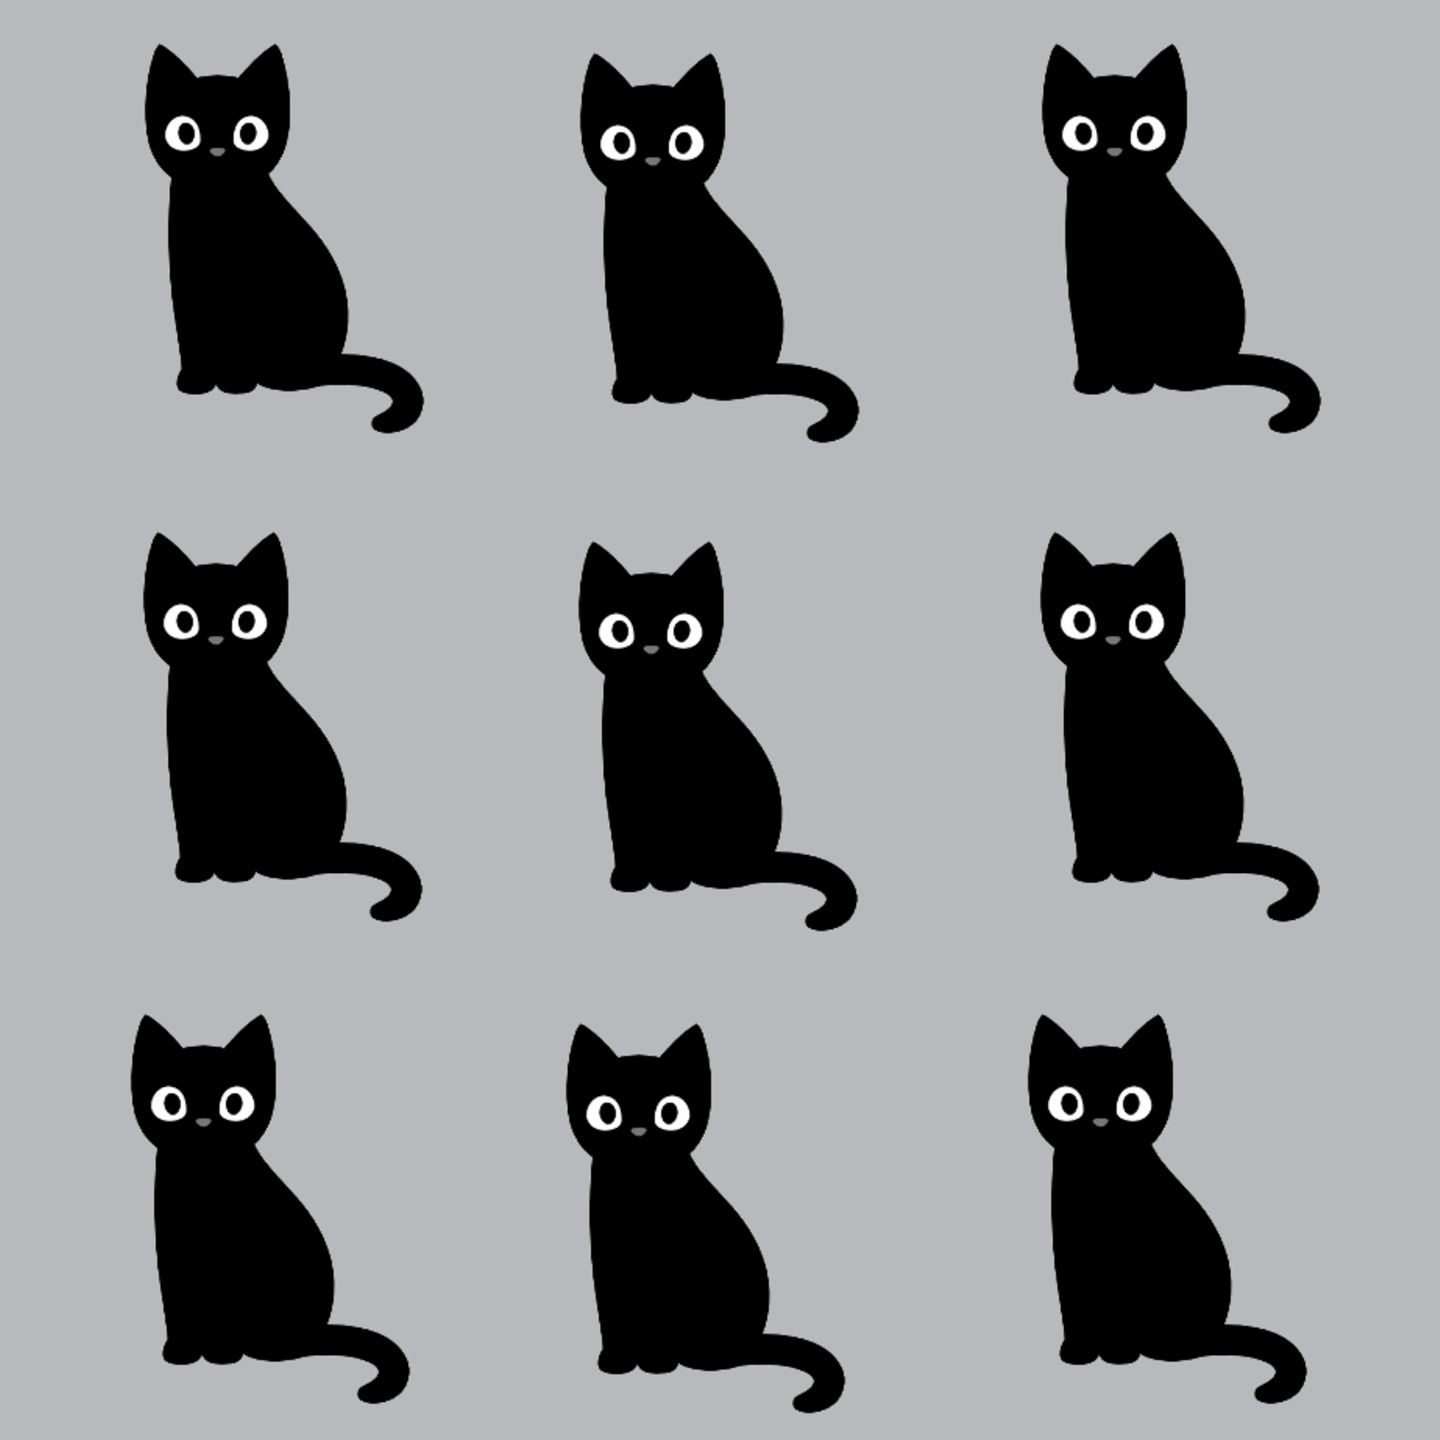 Suchbild: Findest du die Katze, die aus der Reihe tanzt?